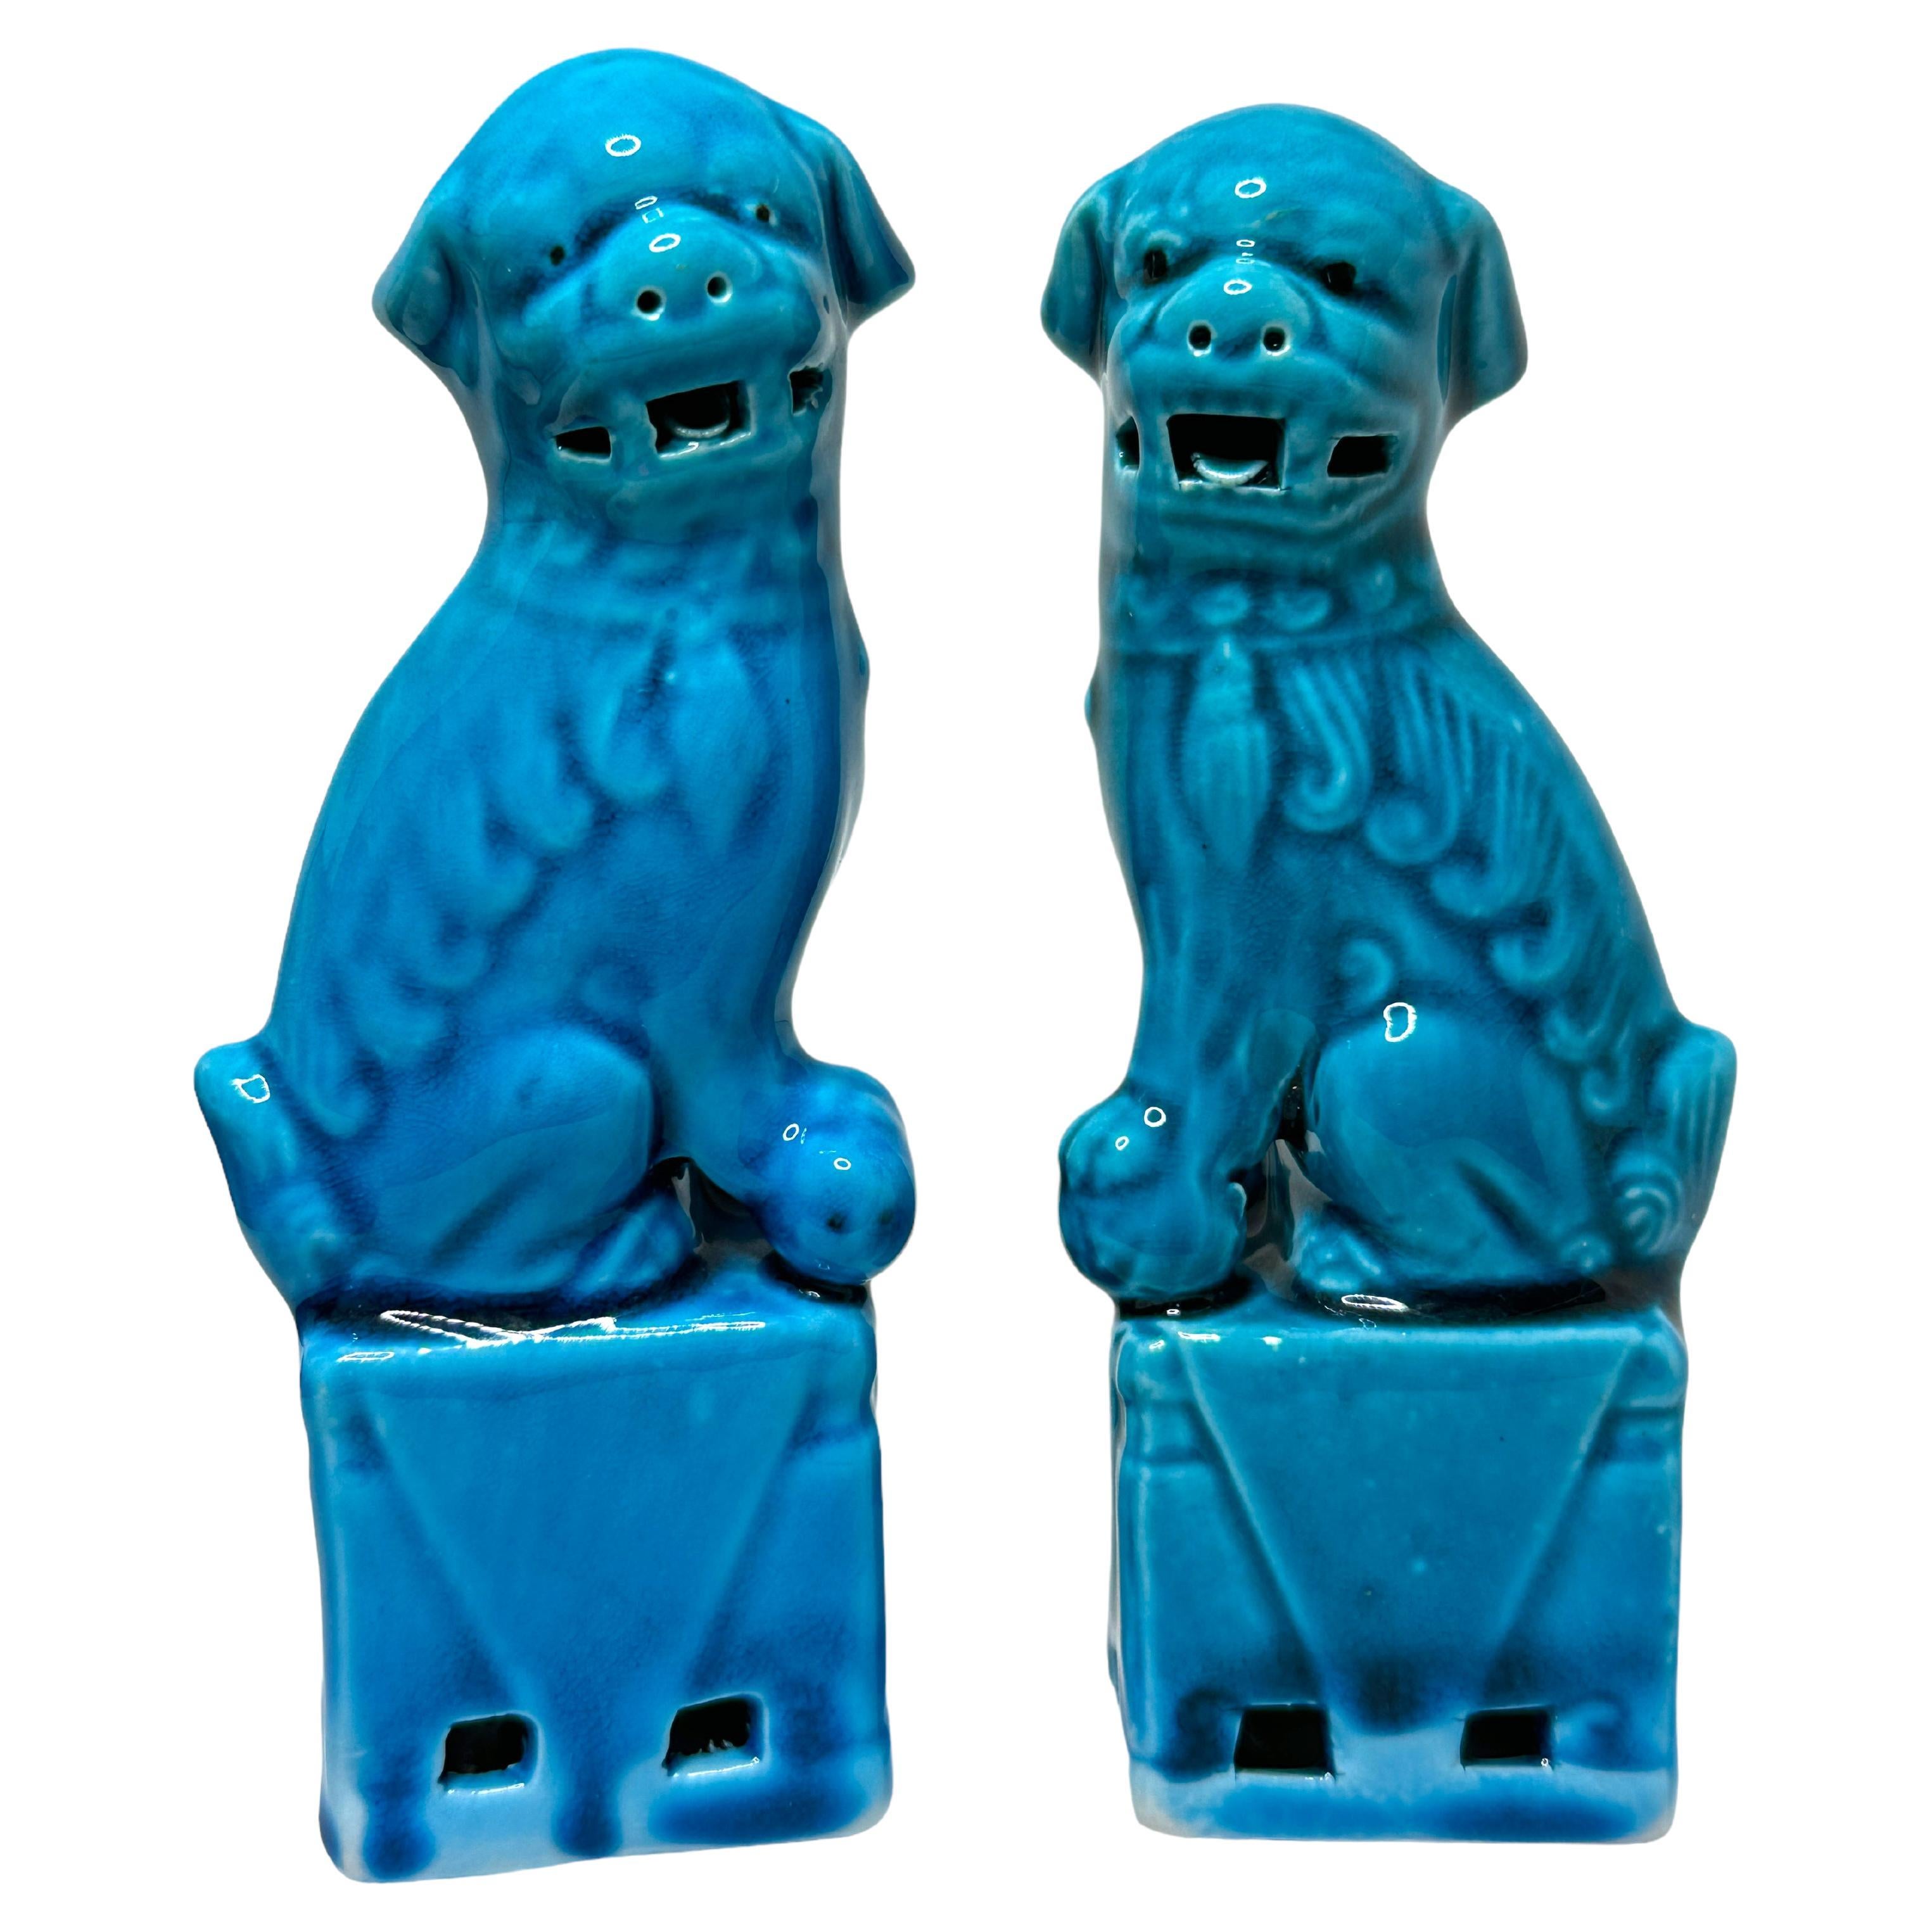 Pair of Decorative Turquoise Blue Foo Dogs Sculptures, Ceramic Statue